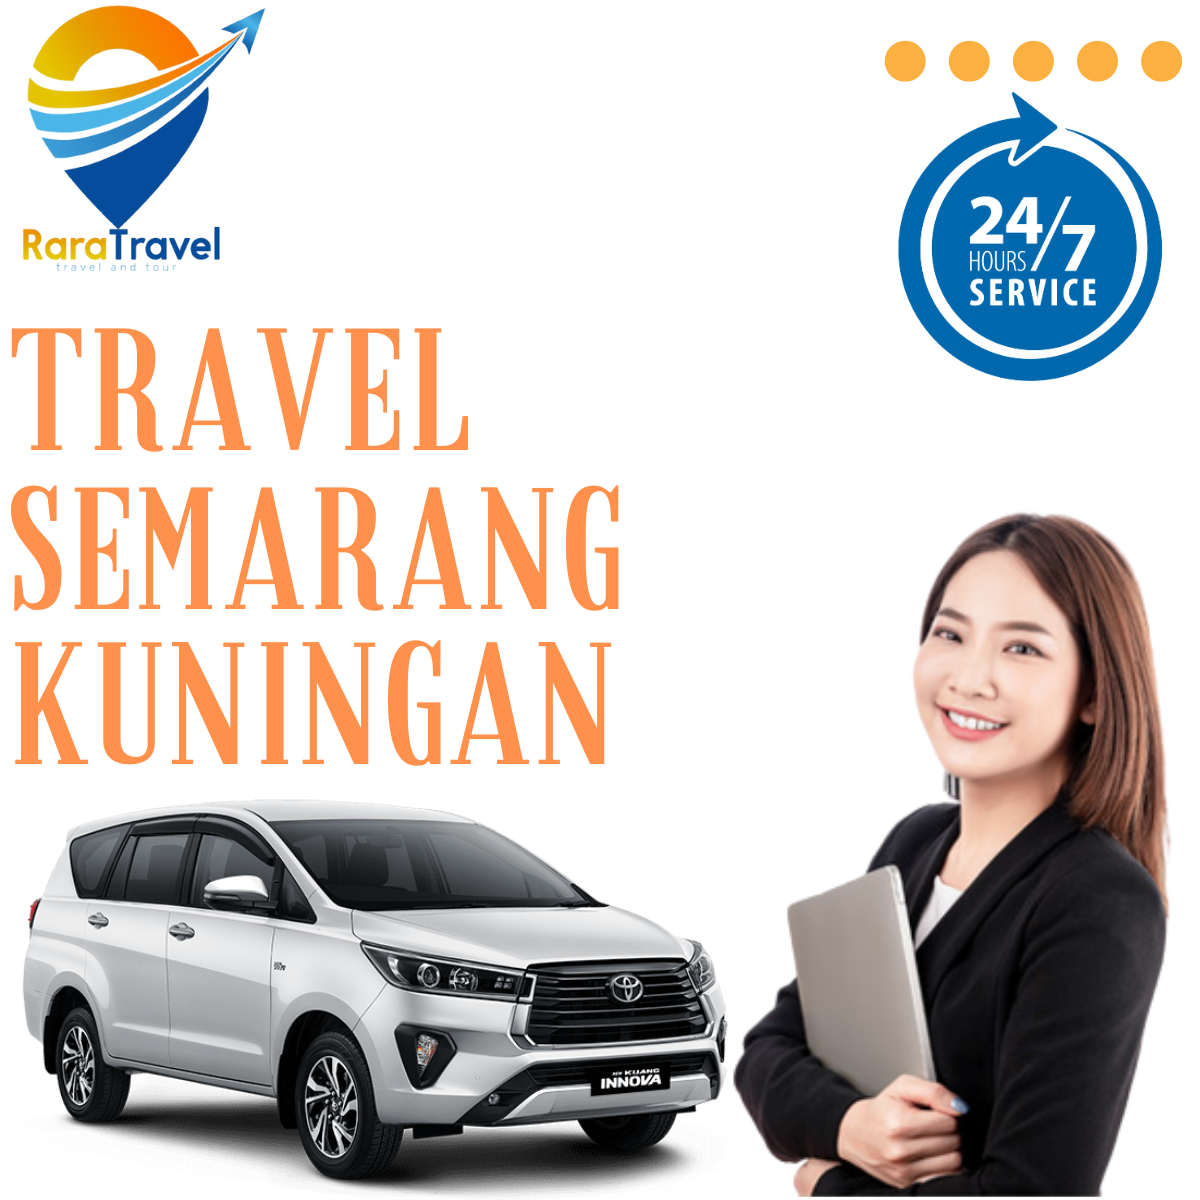 Travel Semarang Kuningan Harga Murah PP - RARATRAVEL.ID